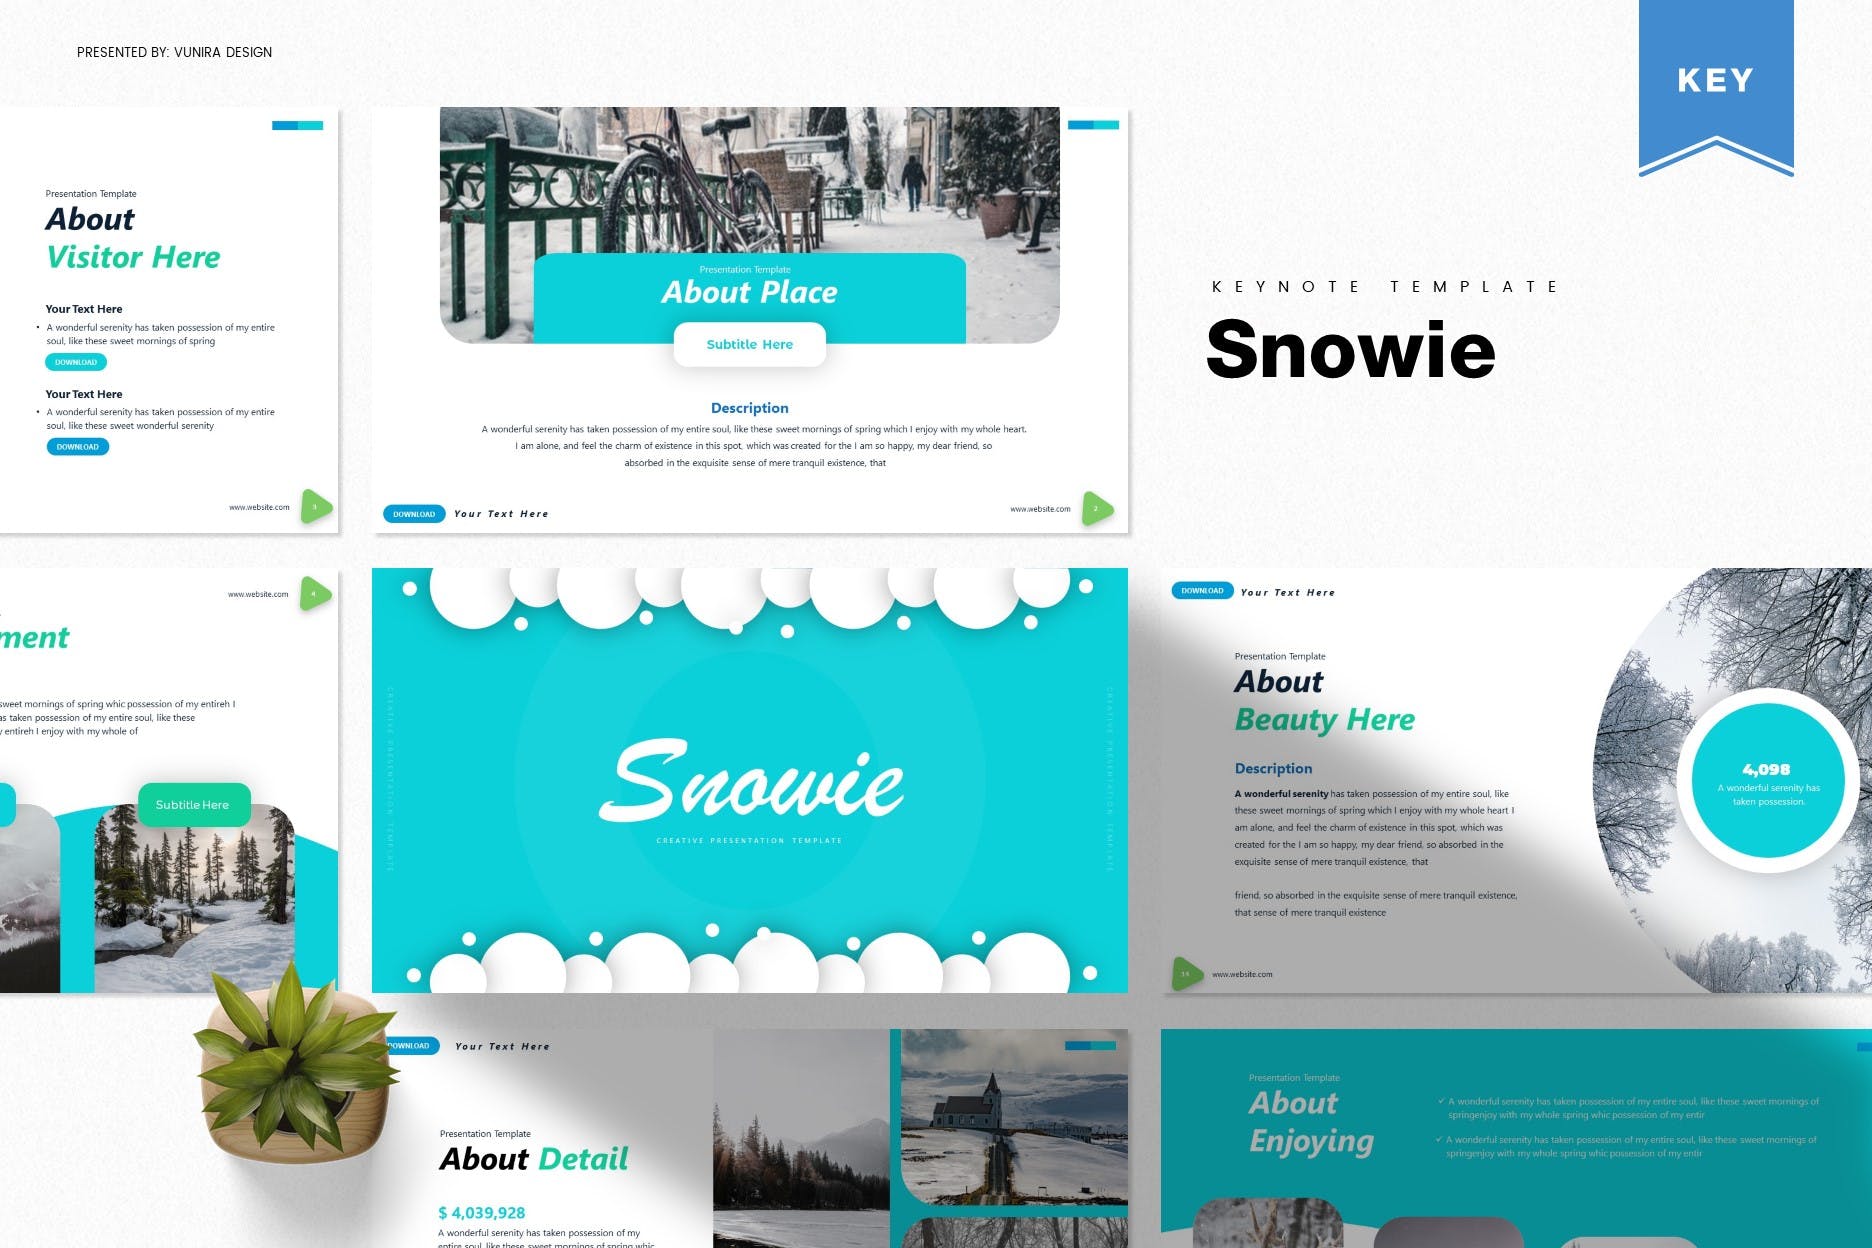 冬季元素版式大洋岛精选Keynote模板 Snowie | Keynote Template插图